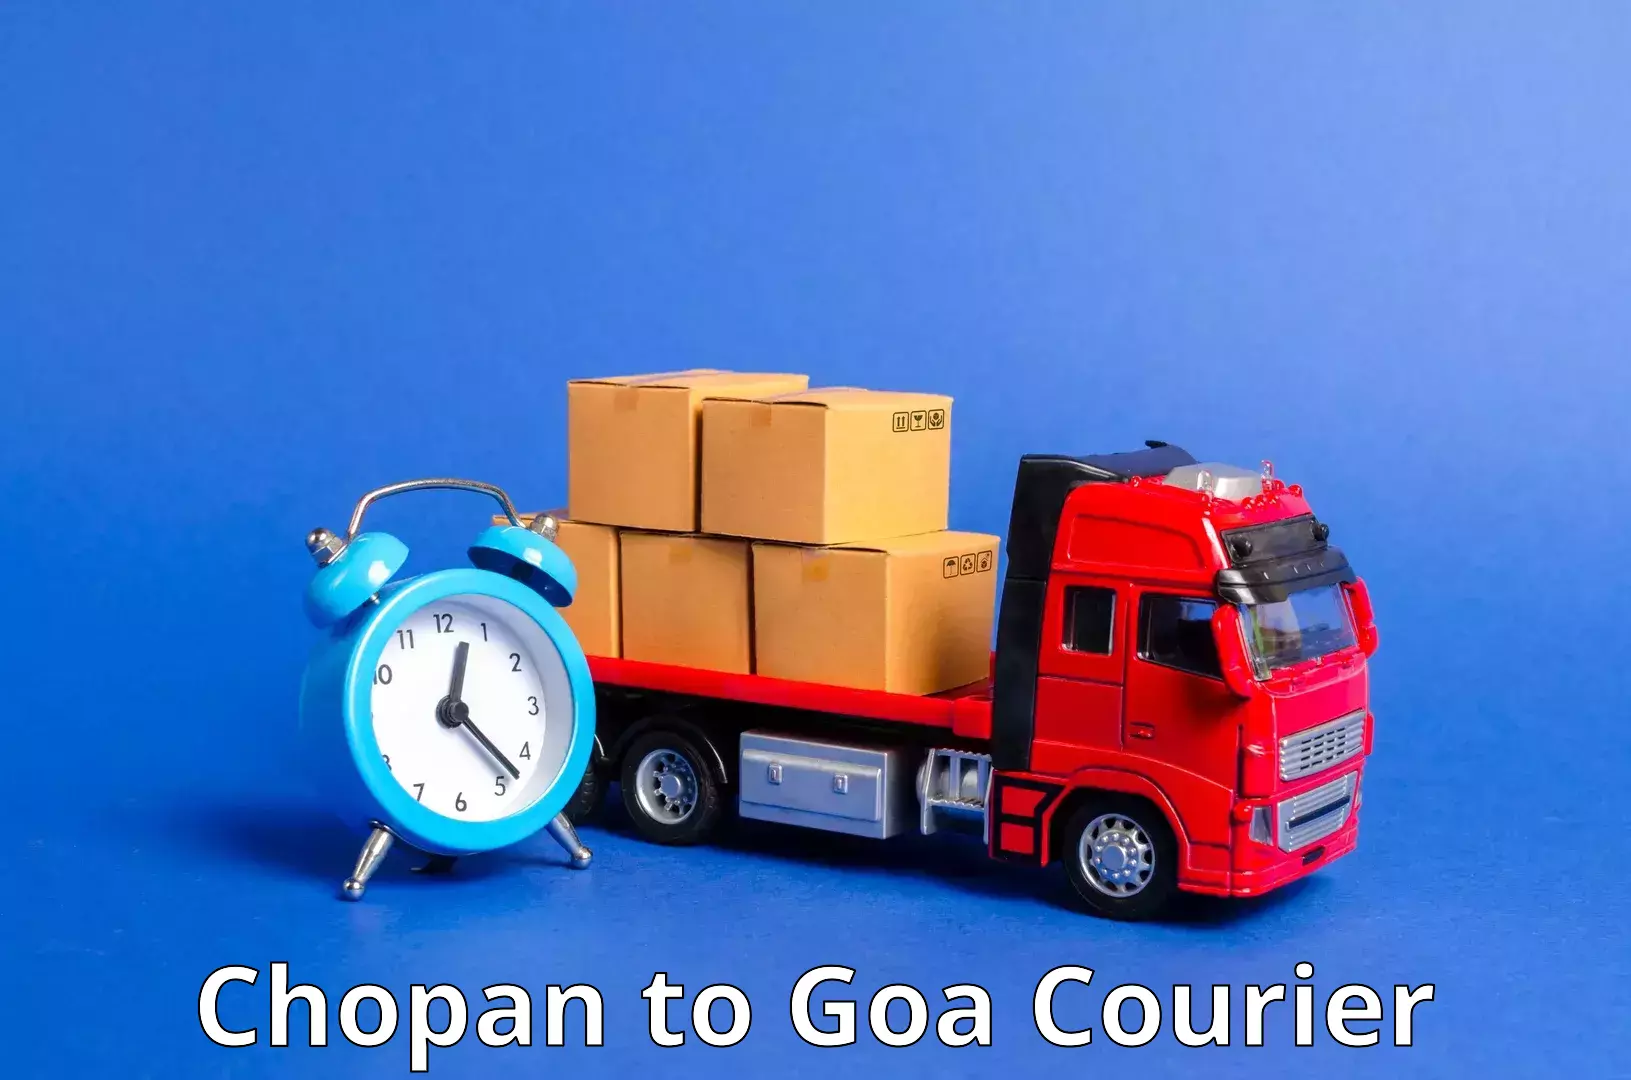 Customized shipping options Chopan to Panaji